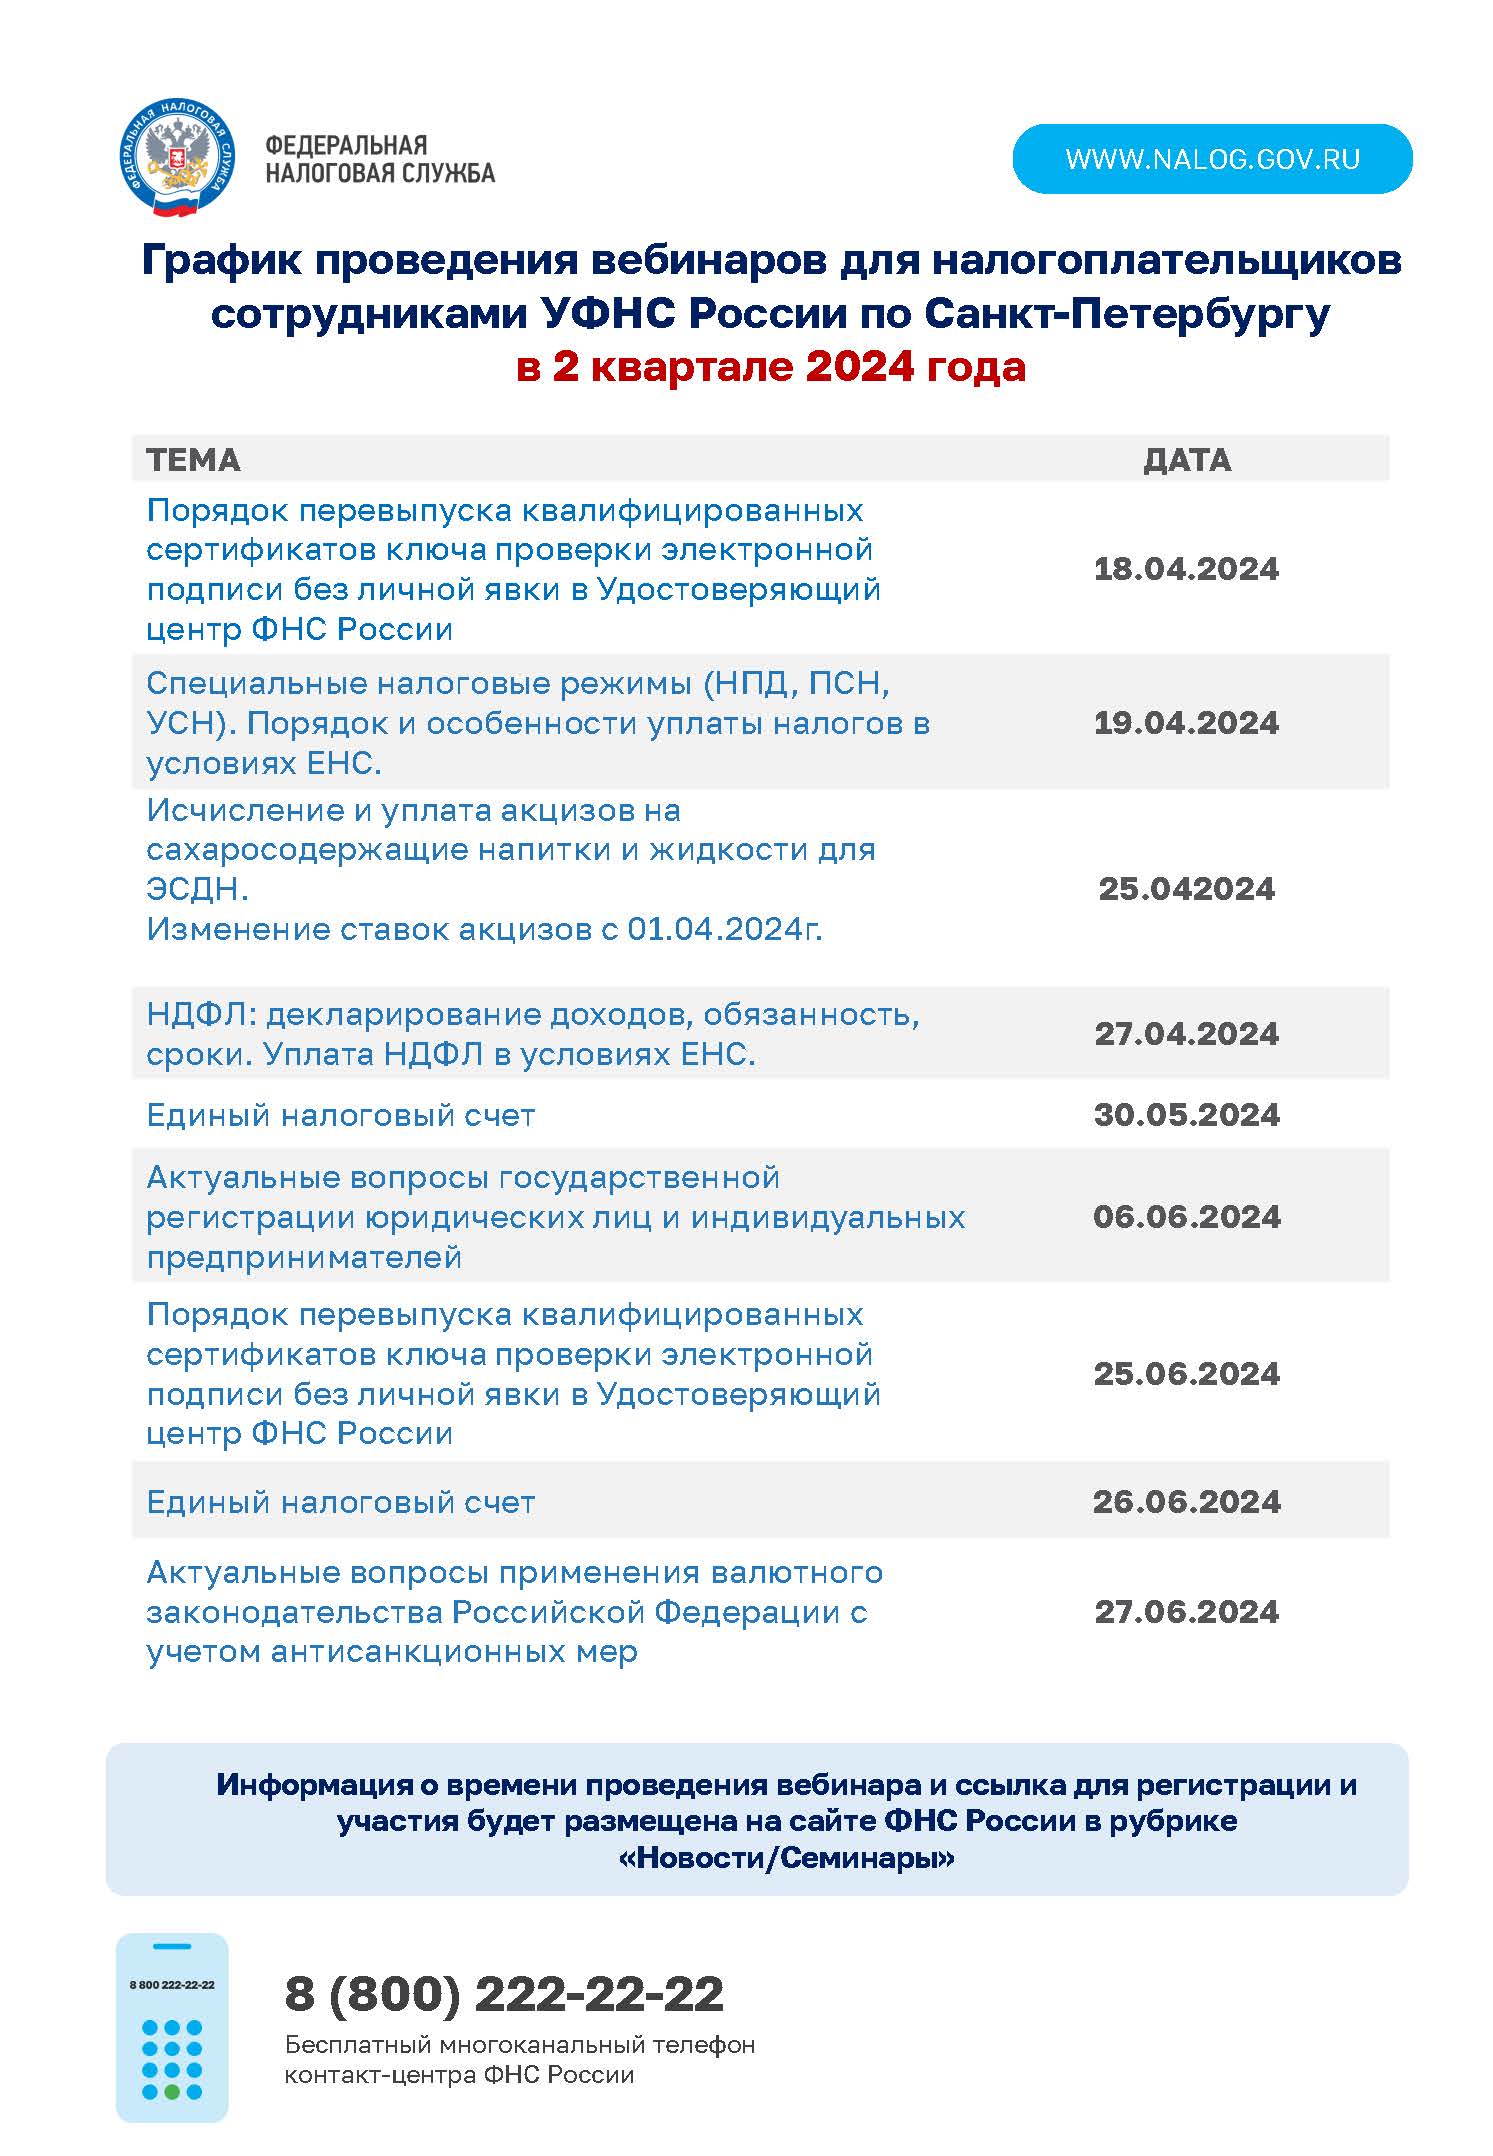 График проведения вебинаров для налогоплательщиков сотрудниками УФНС России по Санкт-Петербургу в 2 квартале 2024 года